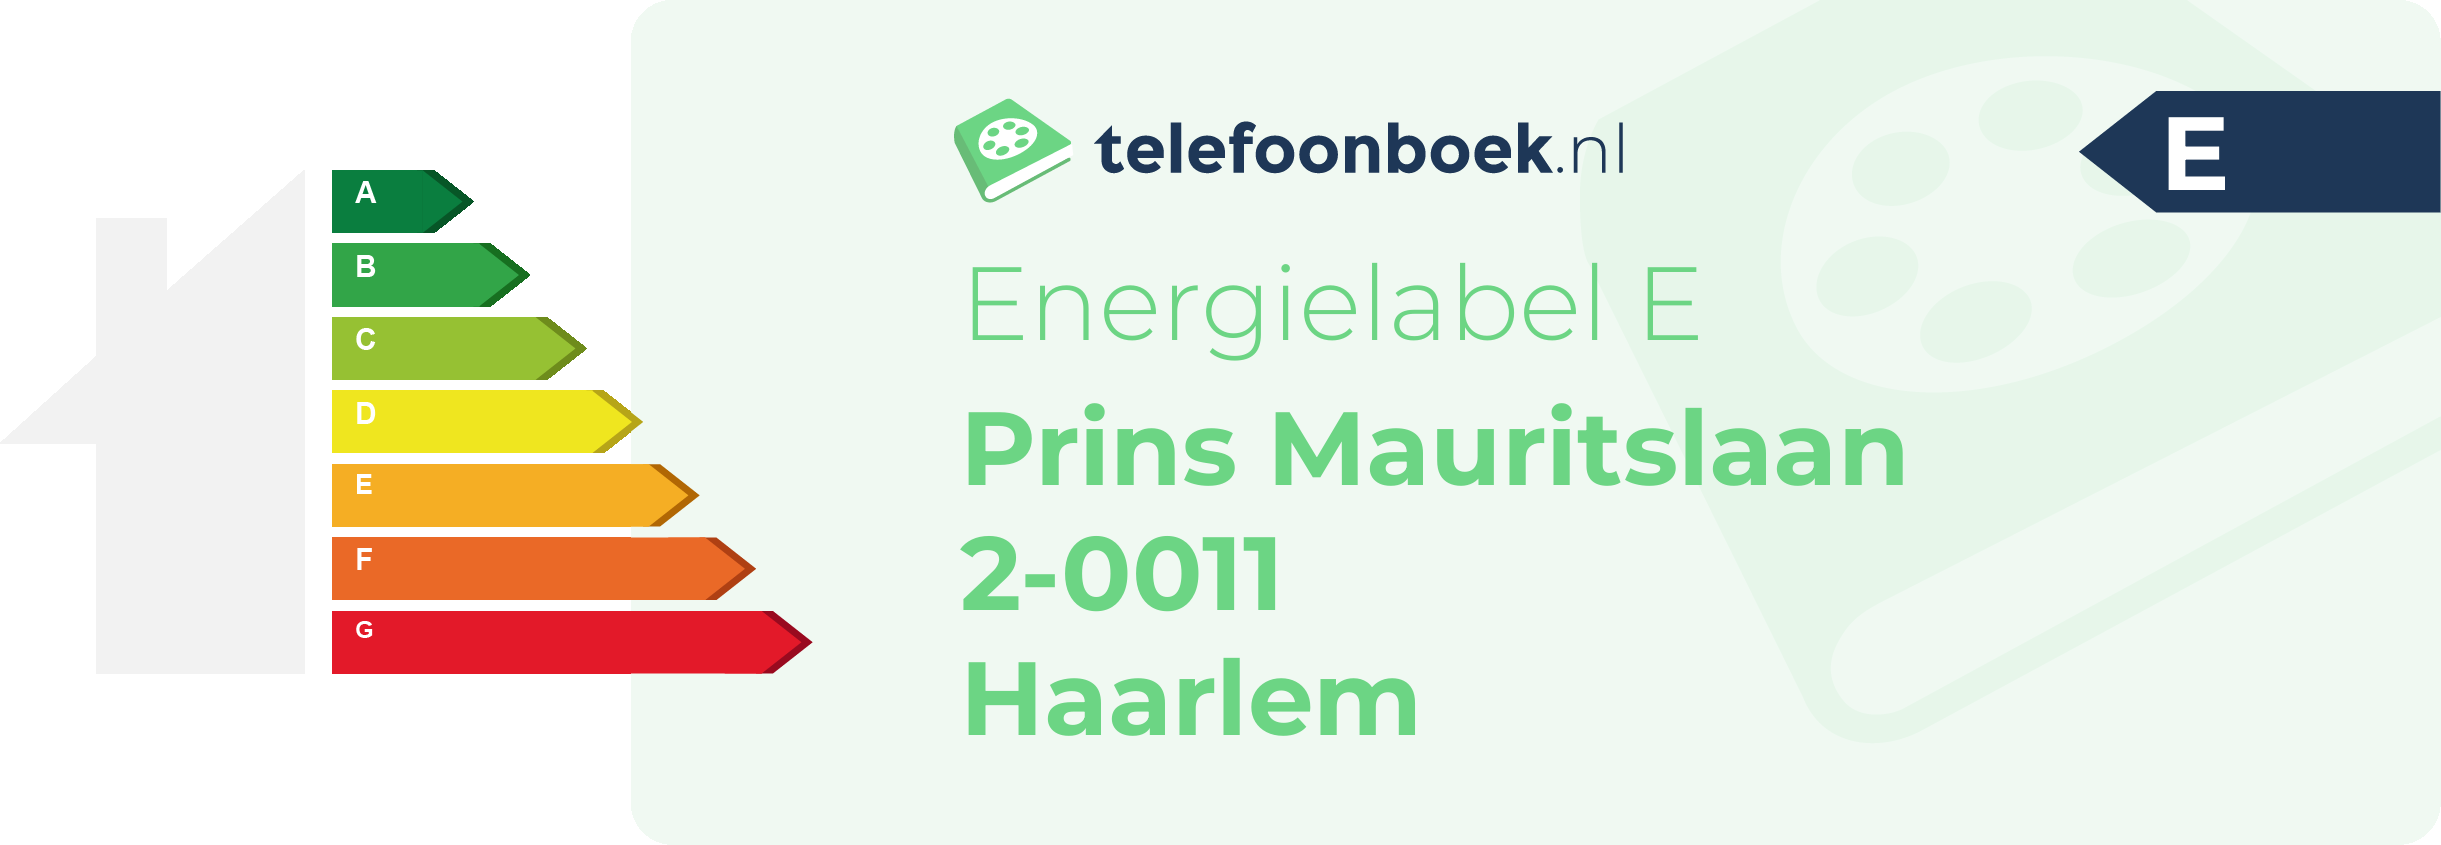 Energielabel Prins Mauritslaan 2-0011 Haarlem